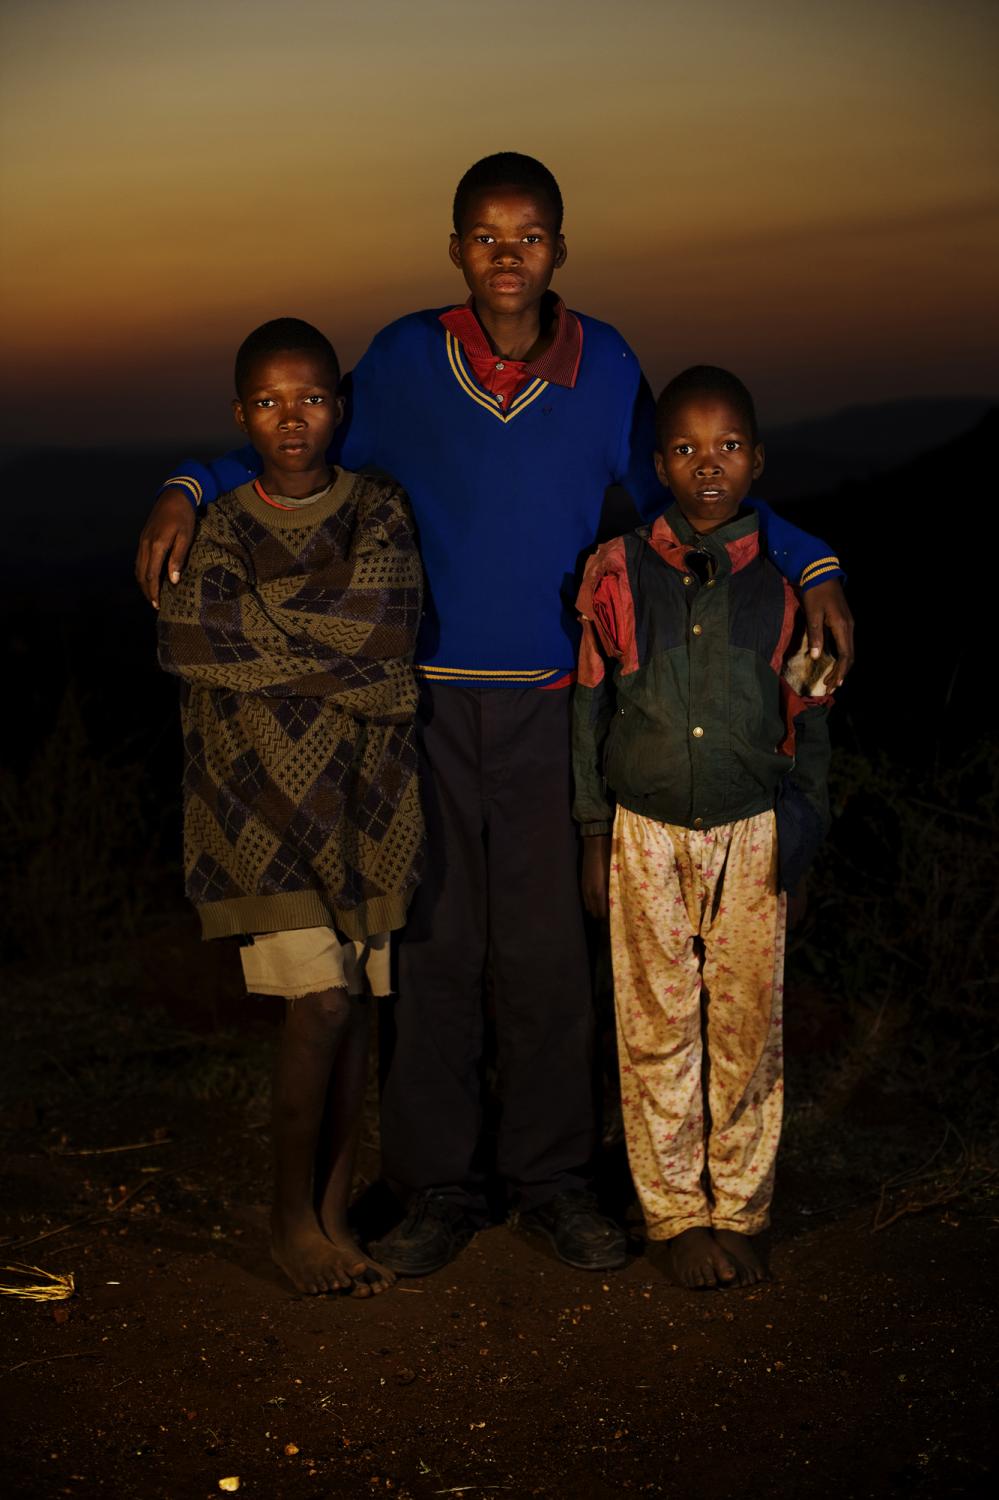 SwazilandÂ´s orphans  - Hosea, Swaziland.
Themba, Phila i Mhleli, The parents...